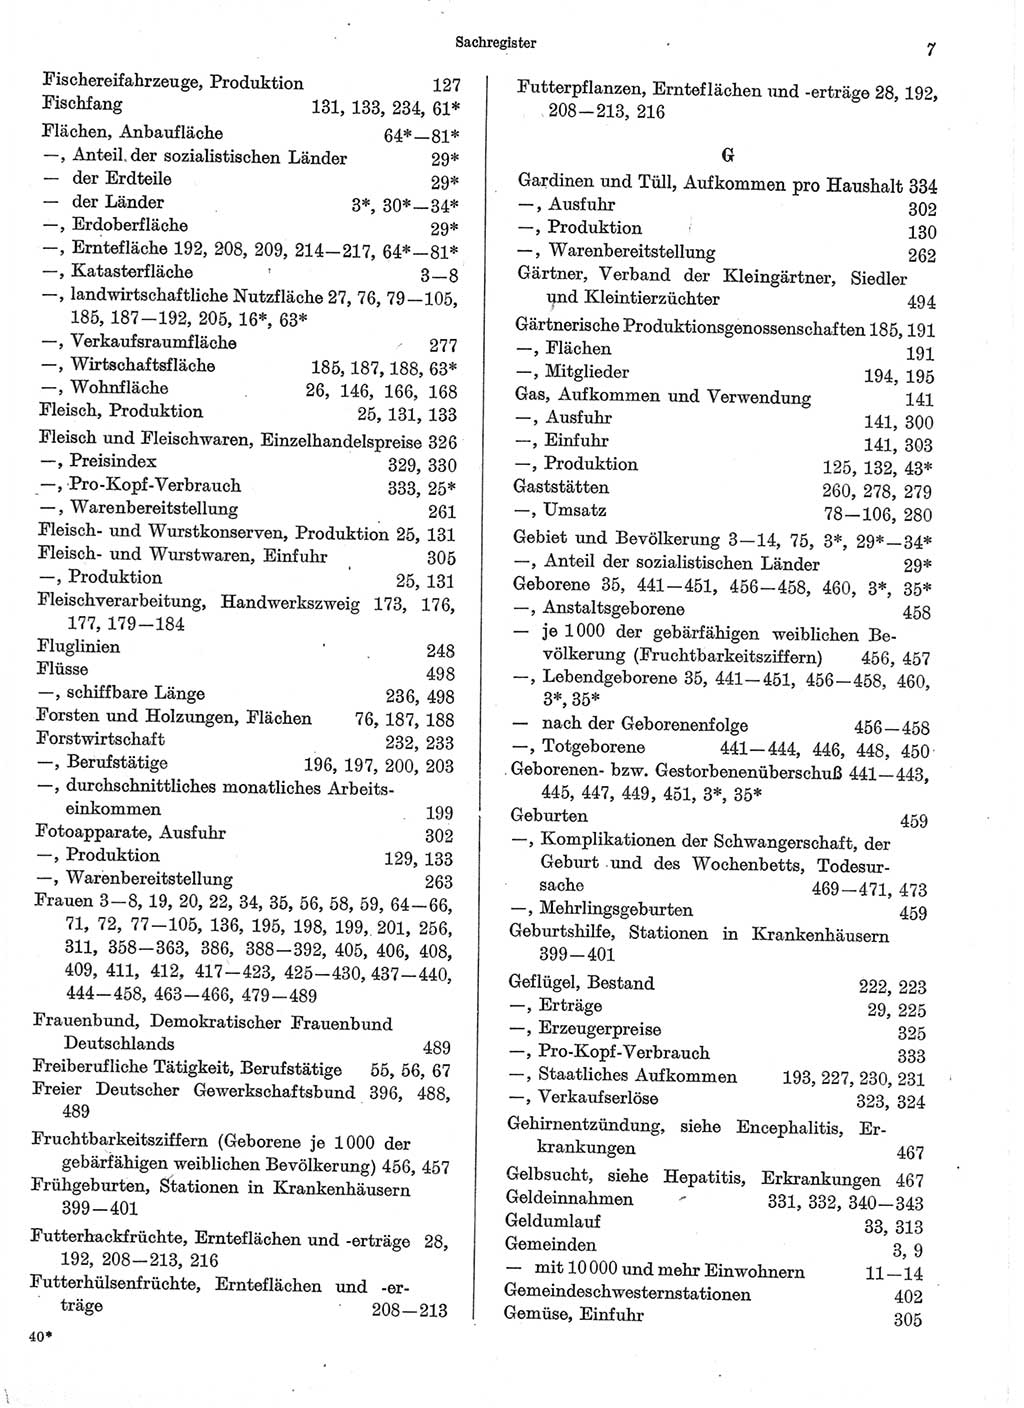 Statistisches Jahrbuch der Deutschen Demokratischen Republik (DDR) 1974, Seite 7 (Stat. Jb. DDR 1974, S. 7)